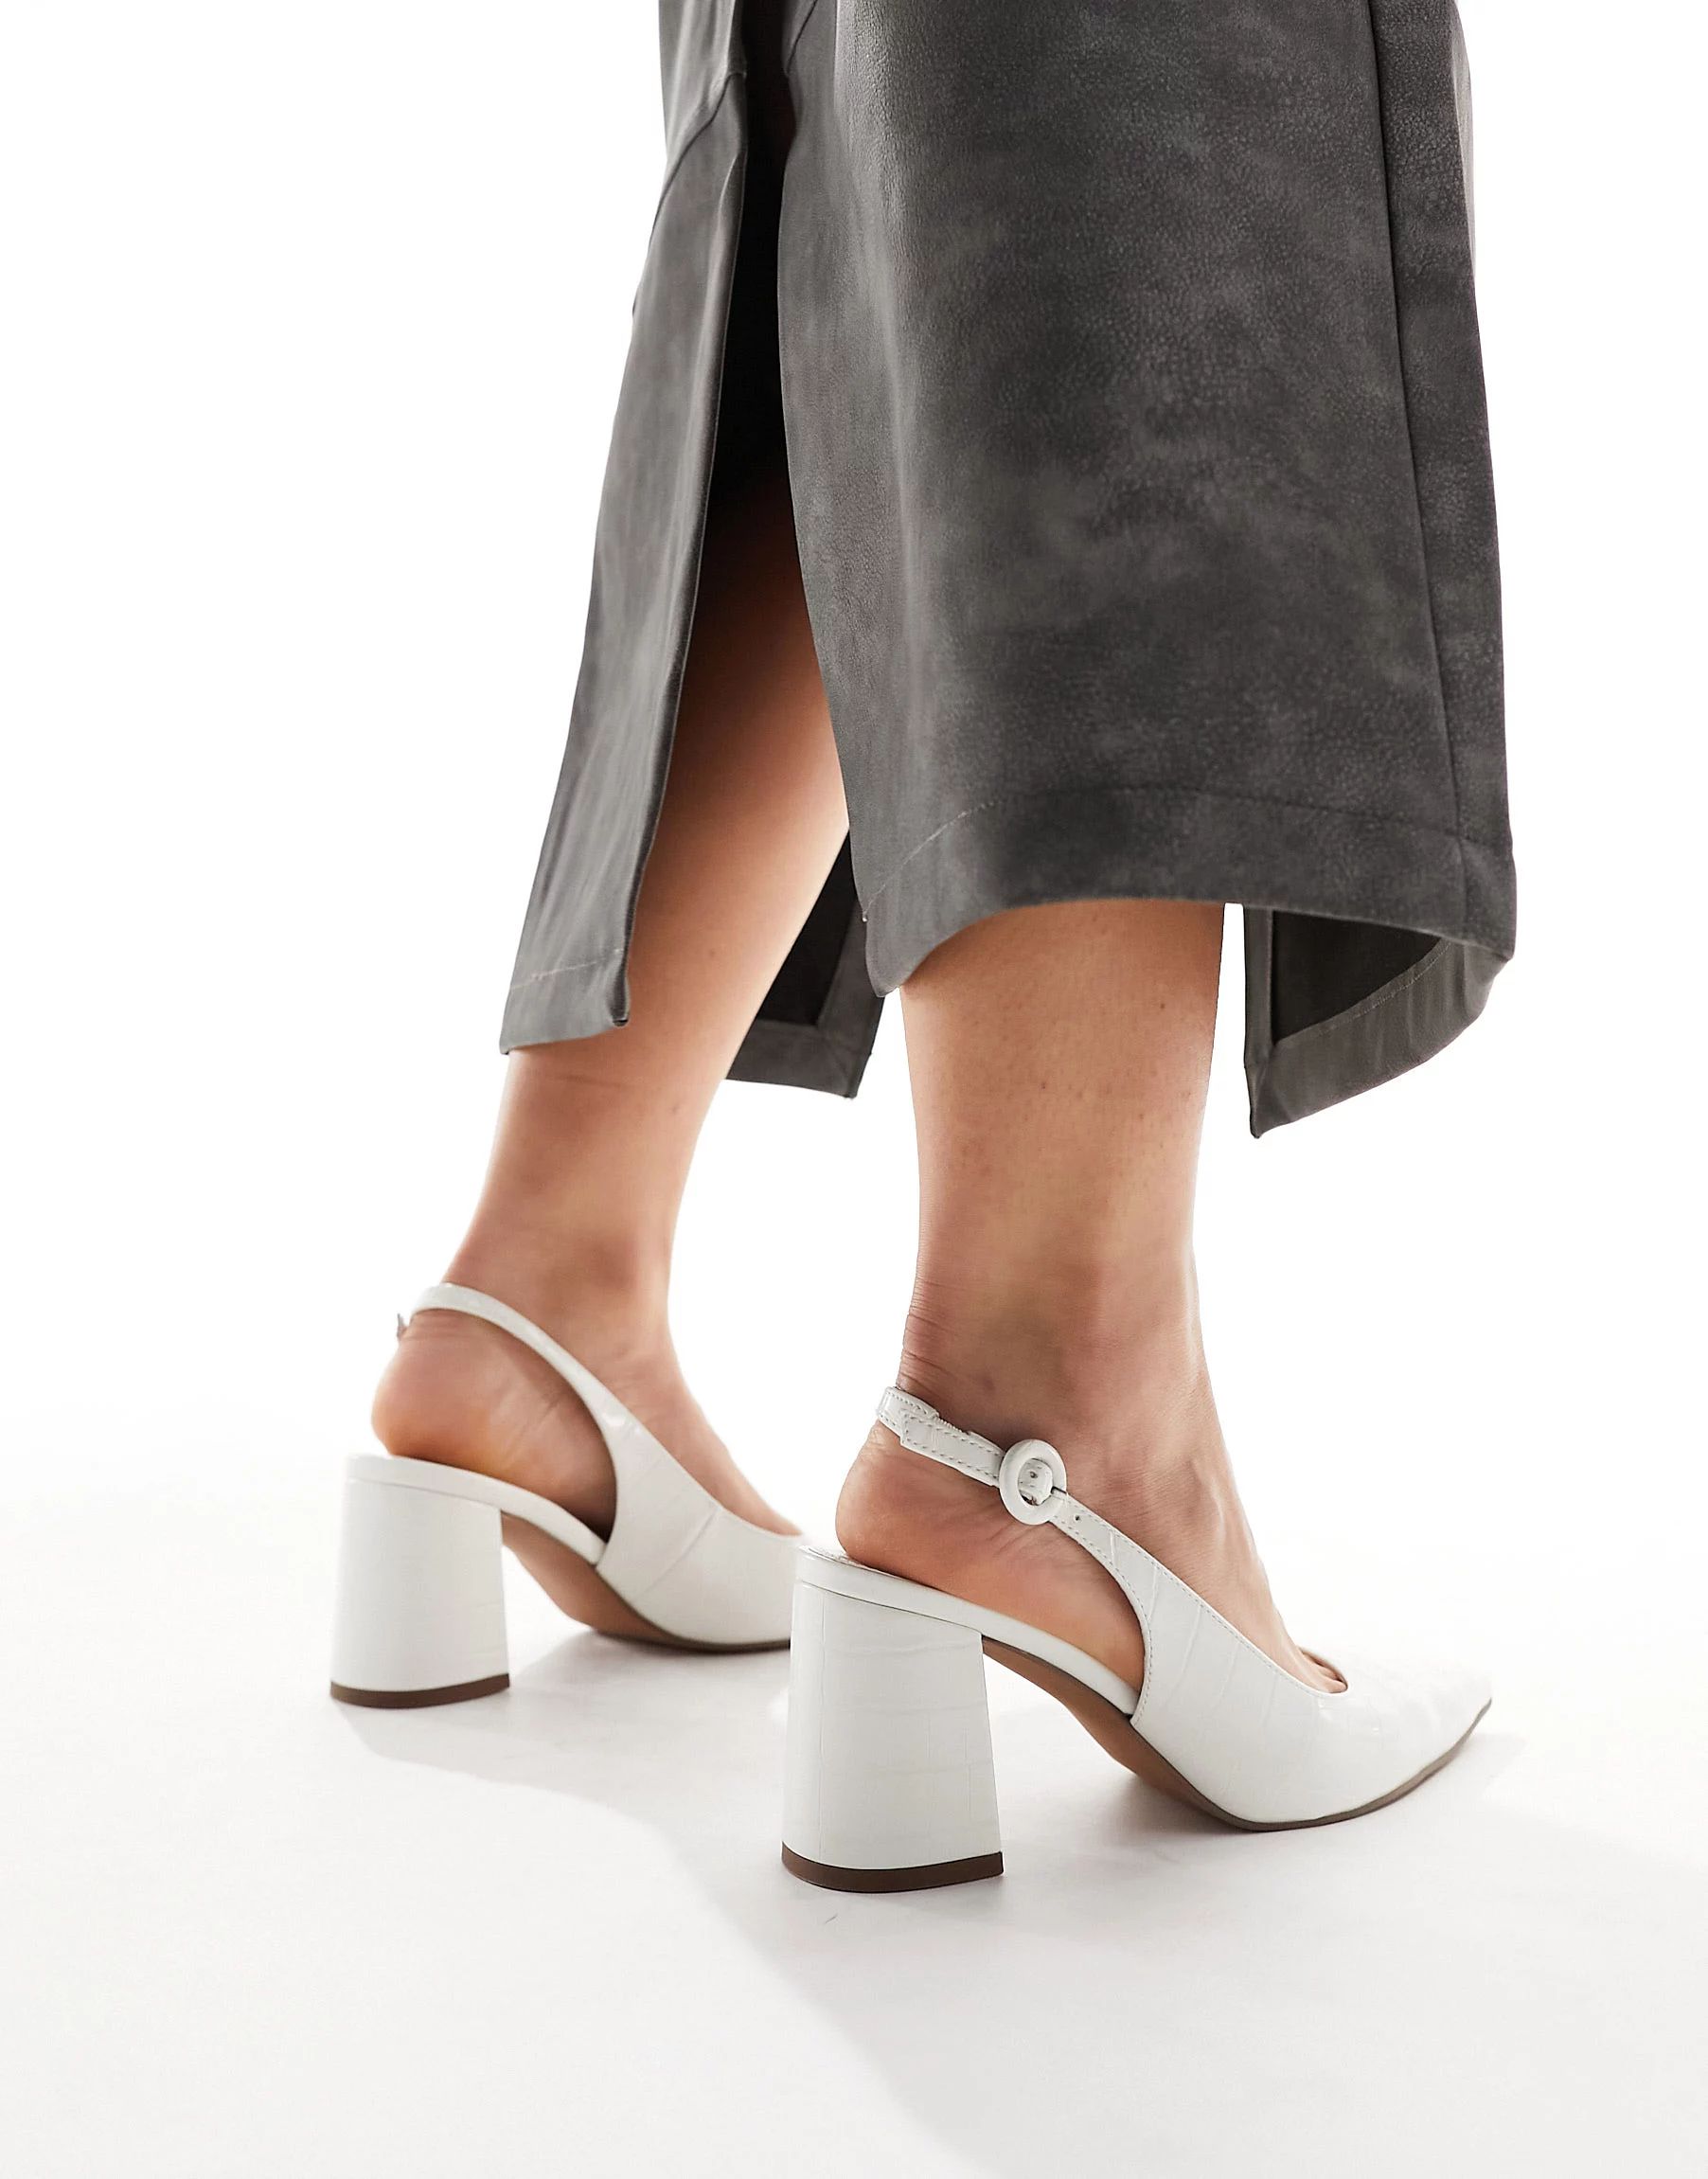 ASOS DESIGN – Sutton – Schuhe in Kroko-Weiß mit Fersenriemen und mittelhohem Blockabsatz, we... | ASOS (Global)